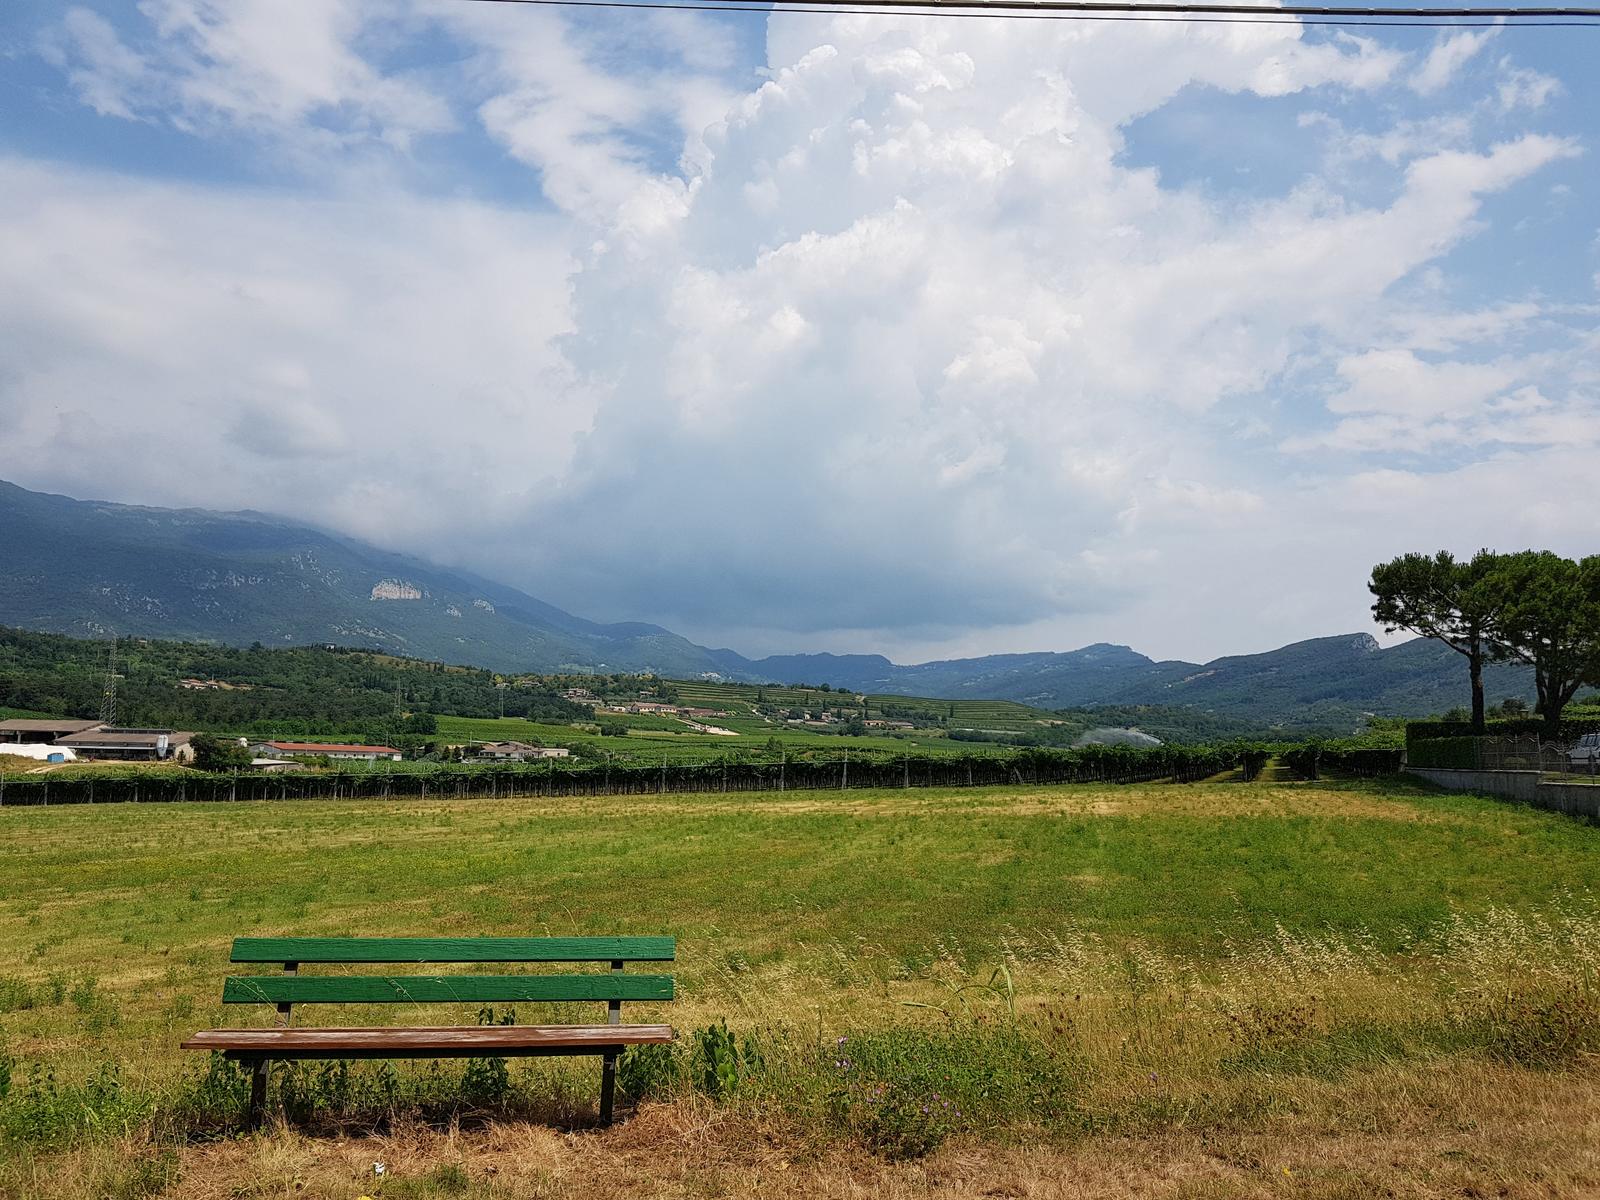 July 5 Lake Garda to Isera